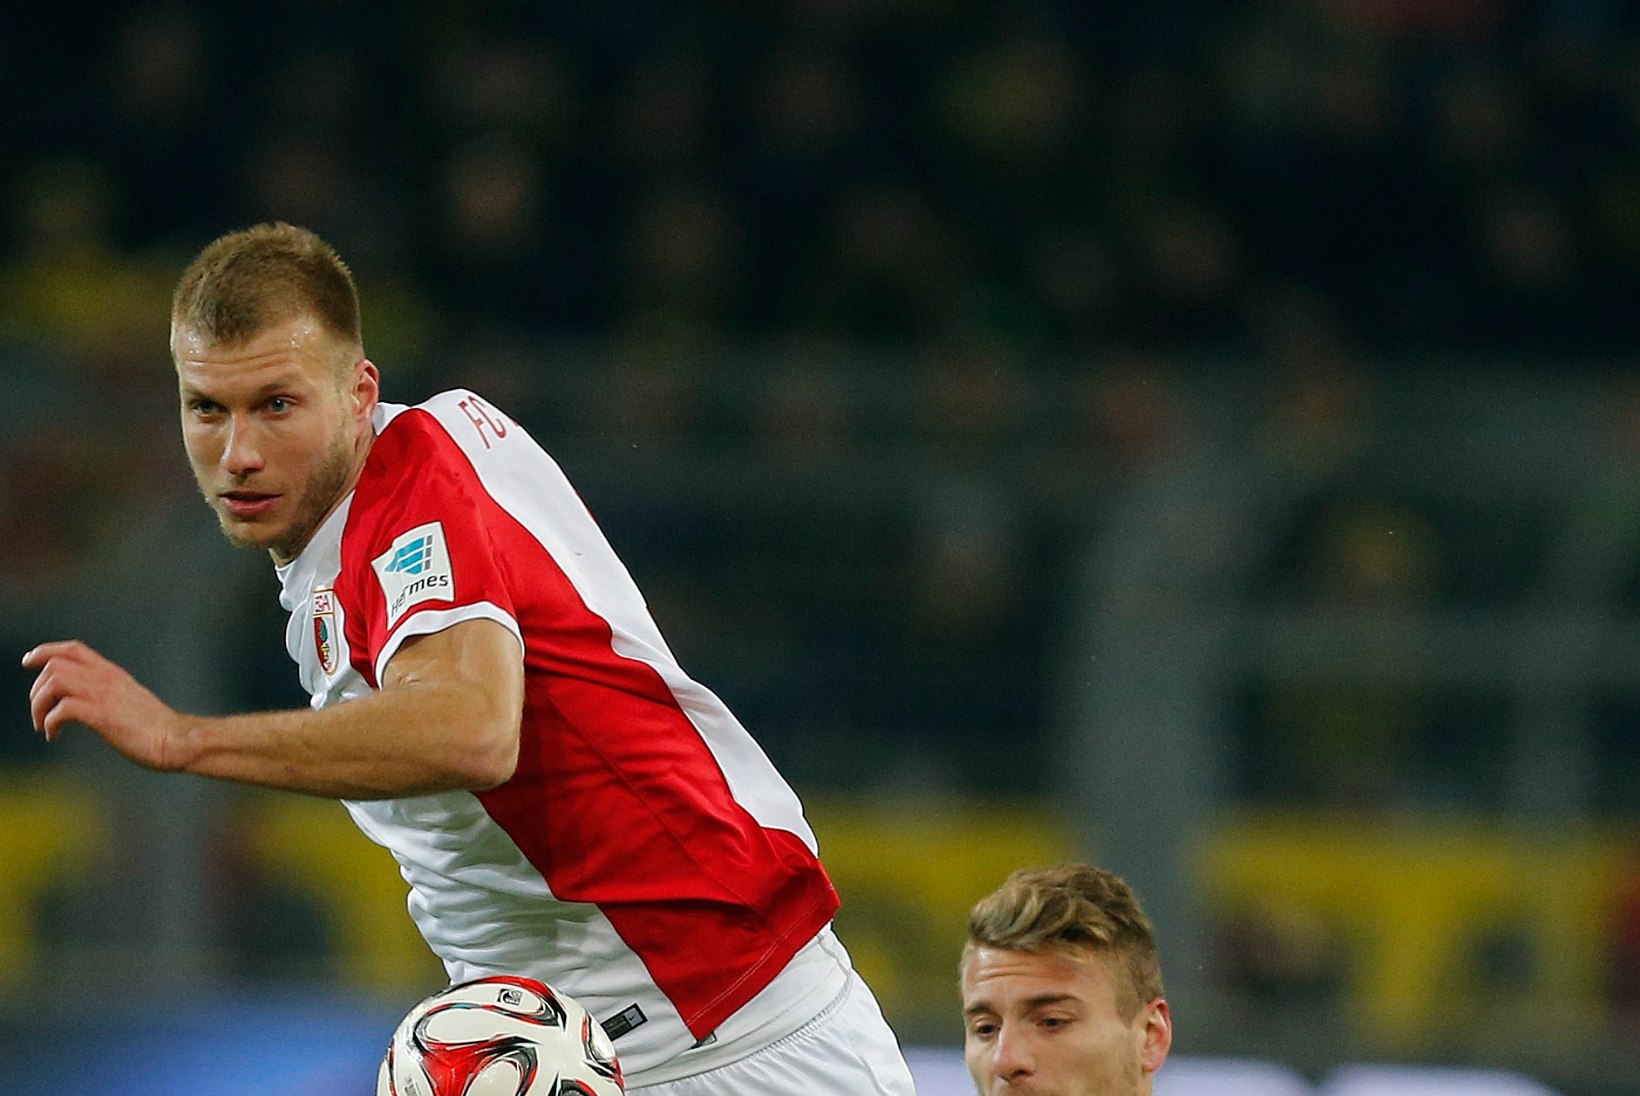 VIDEO ja GALERII | Klavan lõi Augsburgi kaotusmängus värava, ent põhjustas ka penalti